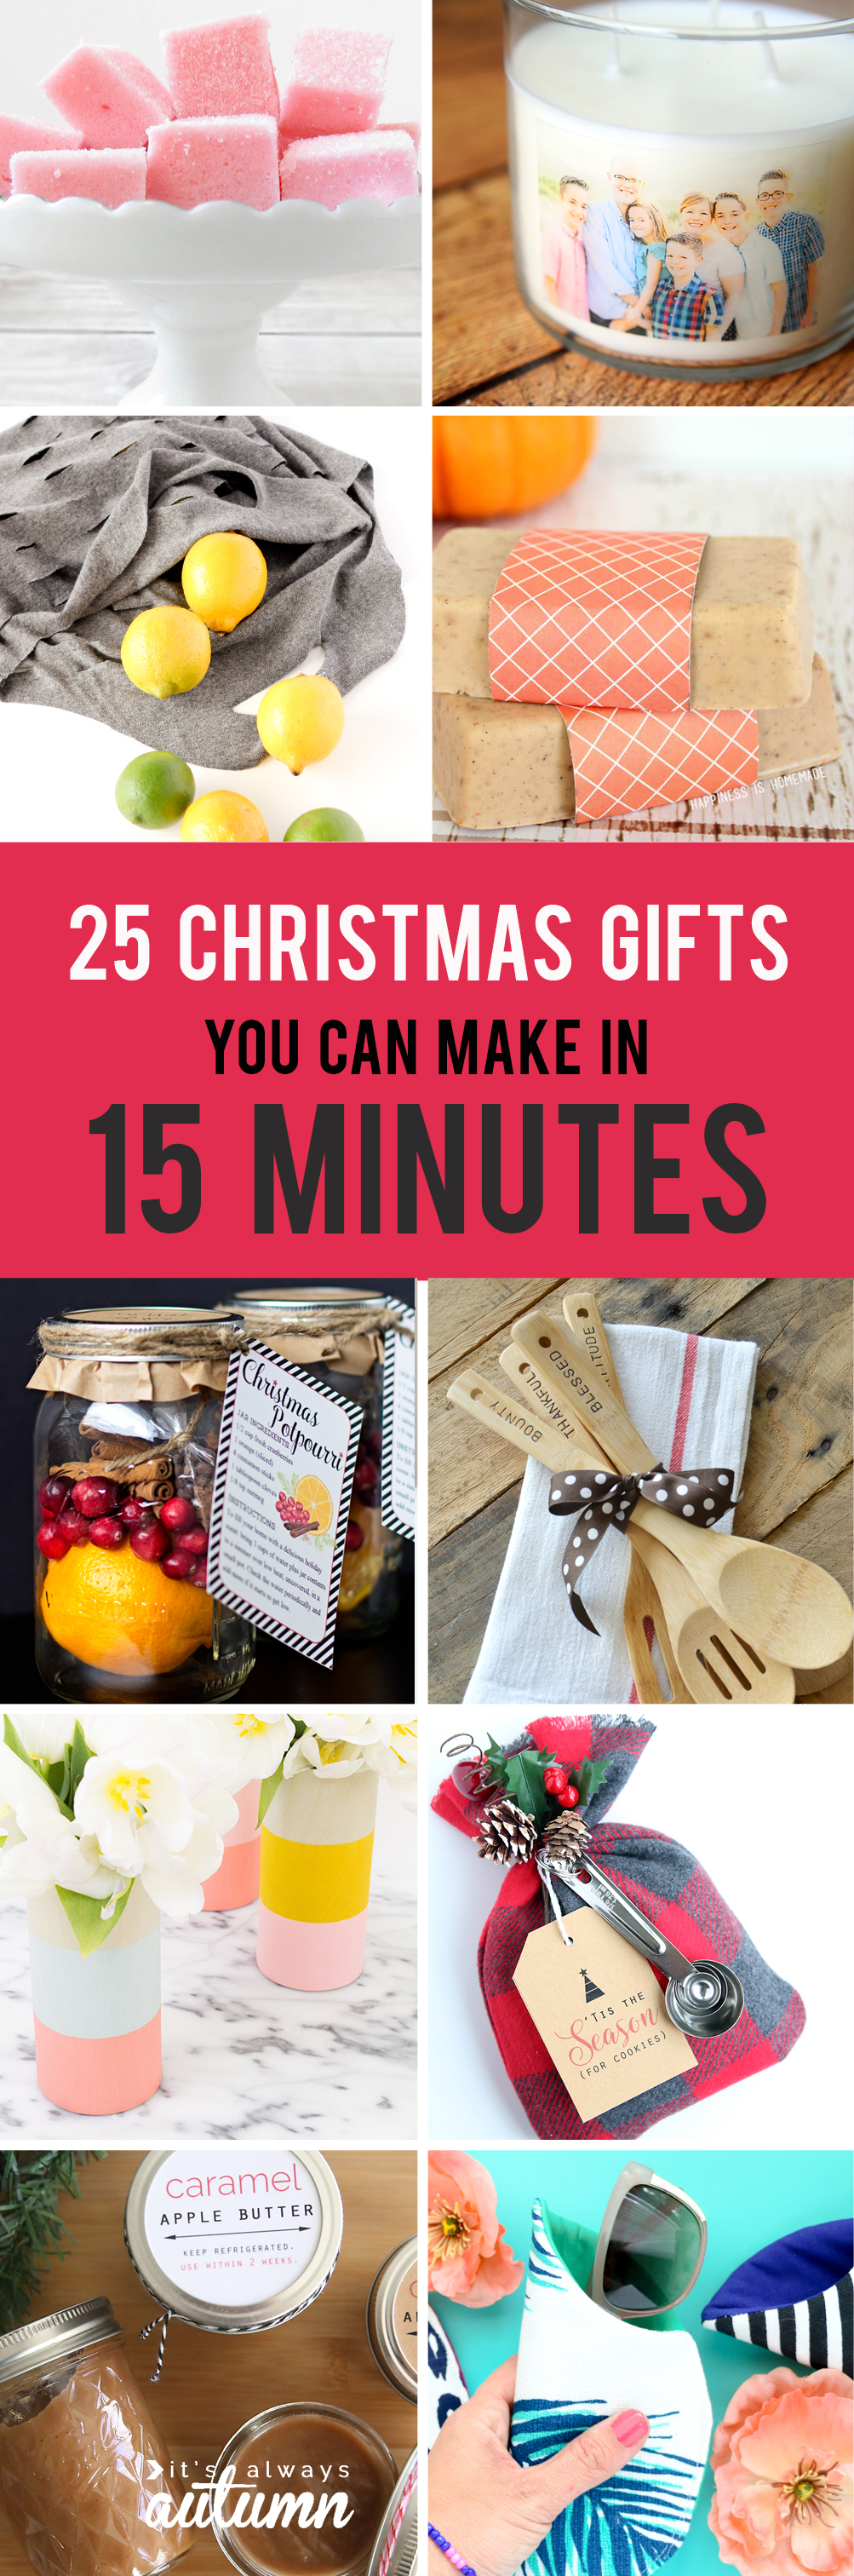 Diy Christmas Gift Ideas - 15+ DIY Christmas Gift Ideas under $10 - The ...